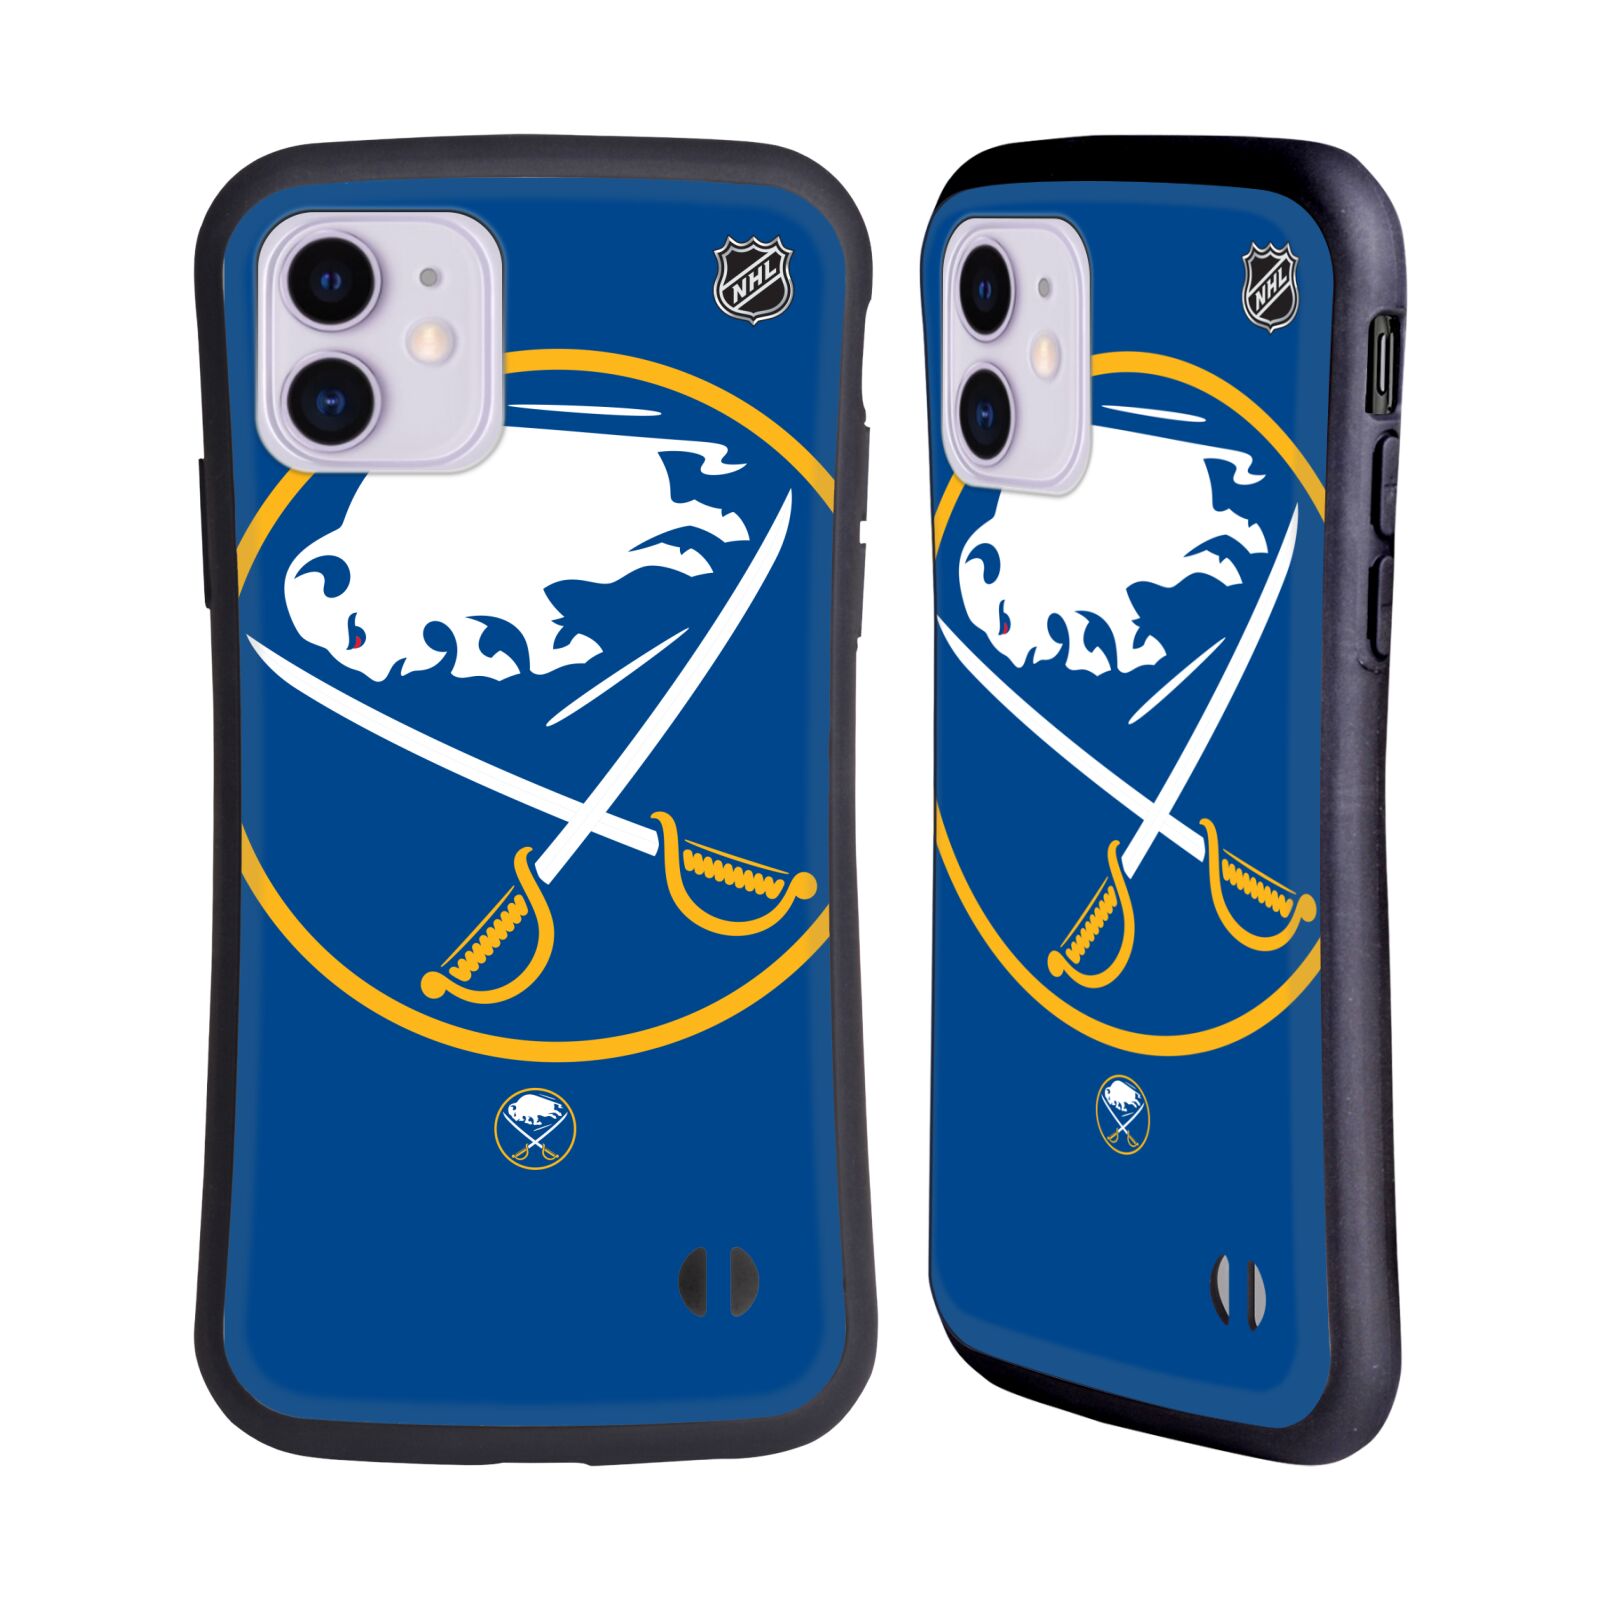 Obal na mobil Apple iPhone 11 - HEAD CASE - NHL - Buffalo Sabres velký znak